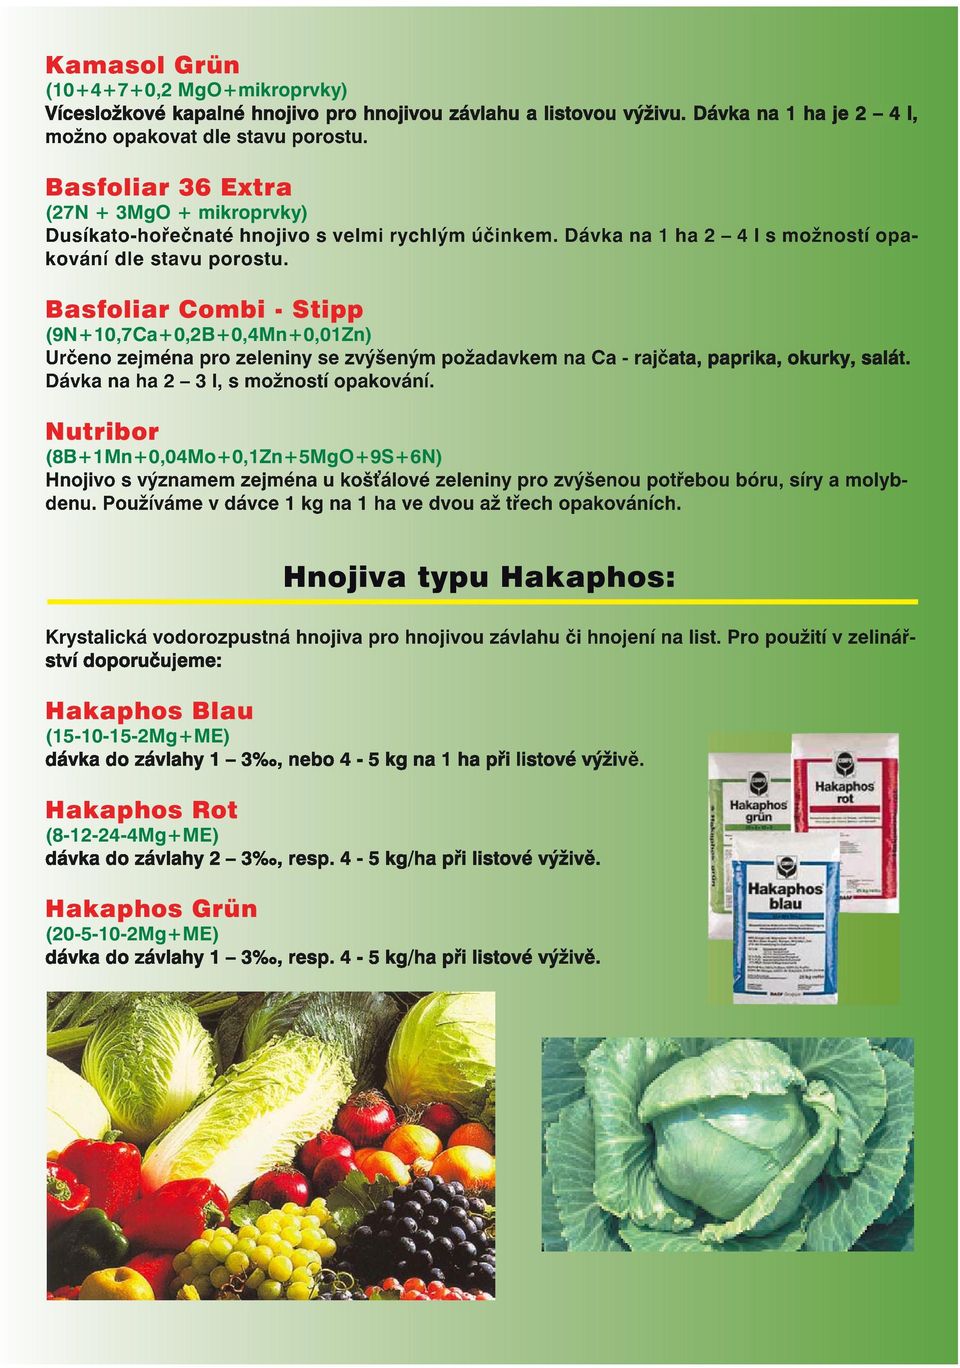 Basfoliar Combi - Stipp (9N+10,7Ca+0,2B+0,4Mn+0,01Zn) Určeno zejména pro zeleniny se zvýšeným požadavkem na Ca - rajčata, paprika, okurky, salát. Dávka na ha 2 3 l, s možností opakování.